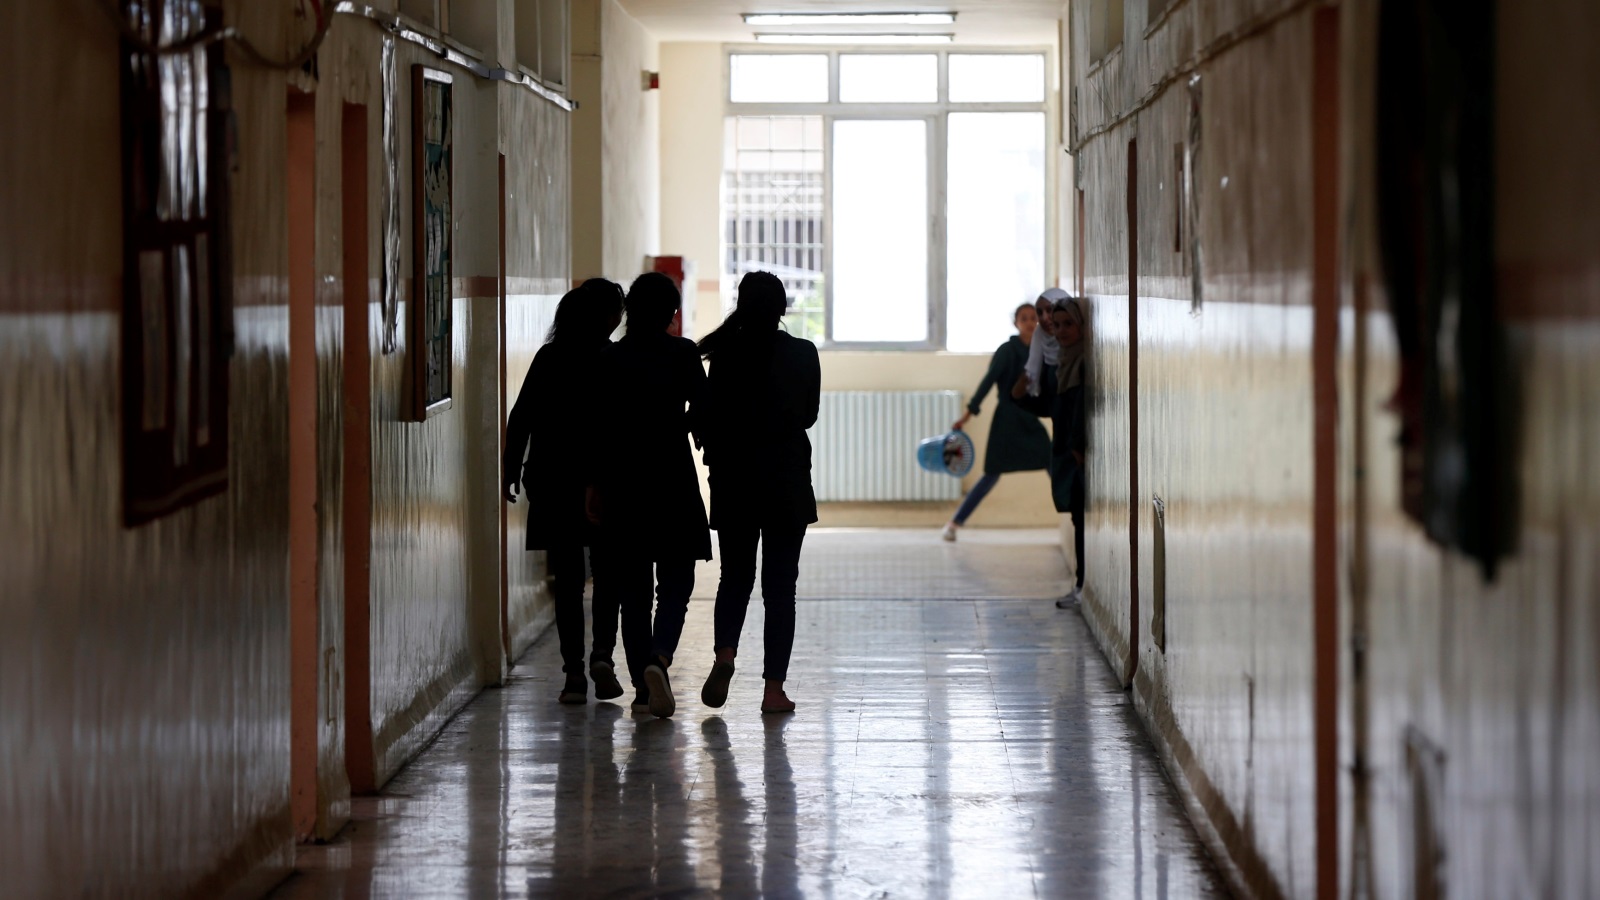 طالبات يتجولن بمدرستهن في غياب الحصص الدراسية بسبب إضراب المعلمين لليوم الثالث على التوالي (رويترز)